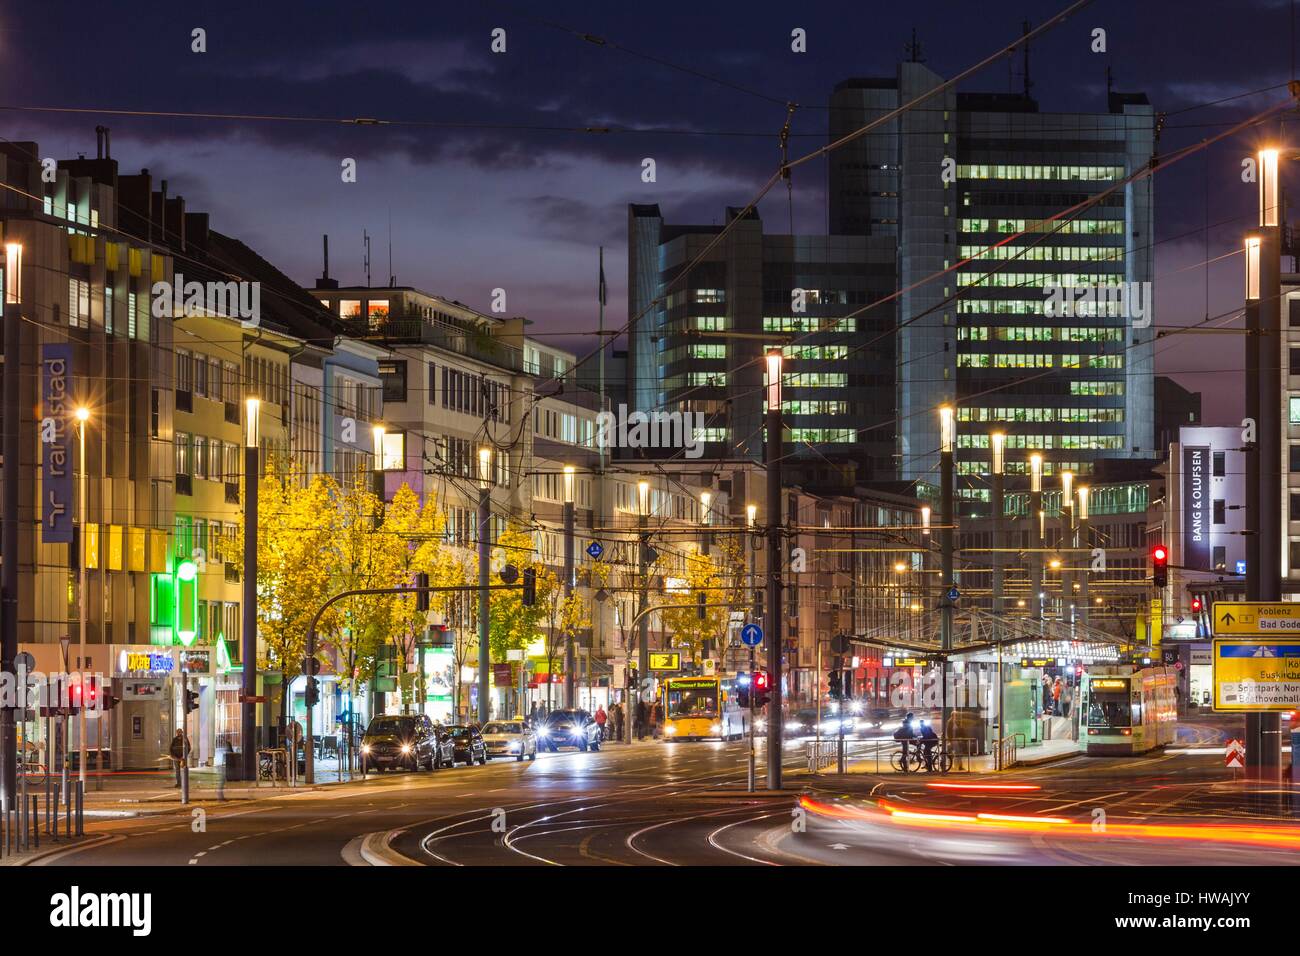 Germany, Nordrhein-Westfalen, Bonn, Bertha von Suttner Platz square, evening traffic Stock Photo